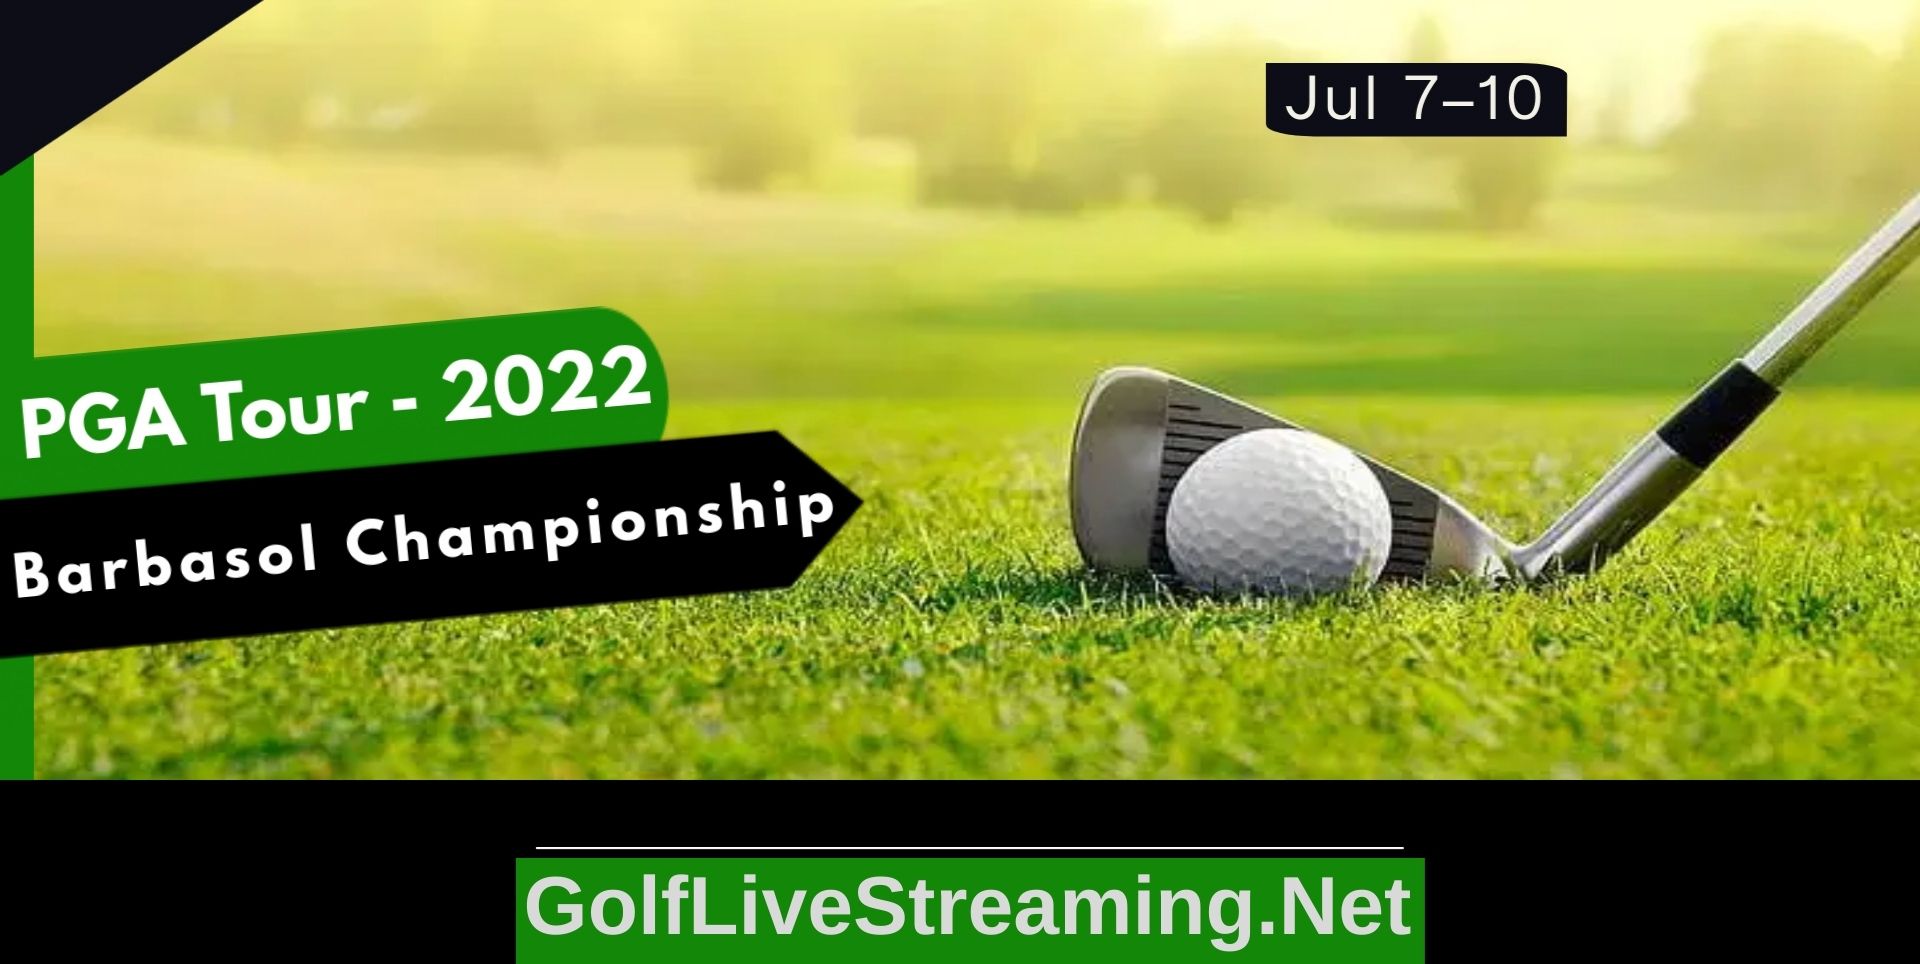 Barbasol Championship Rd 1 Live Stream 2022 | PGA Tour slider